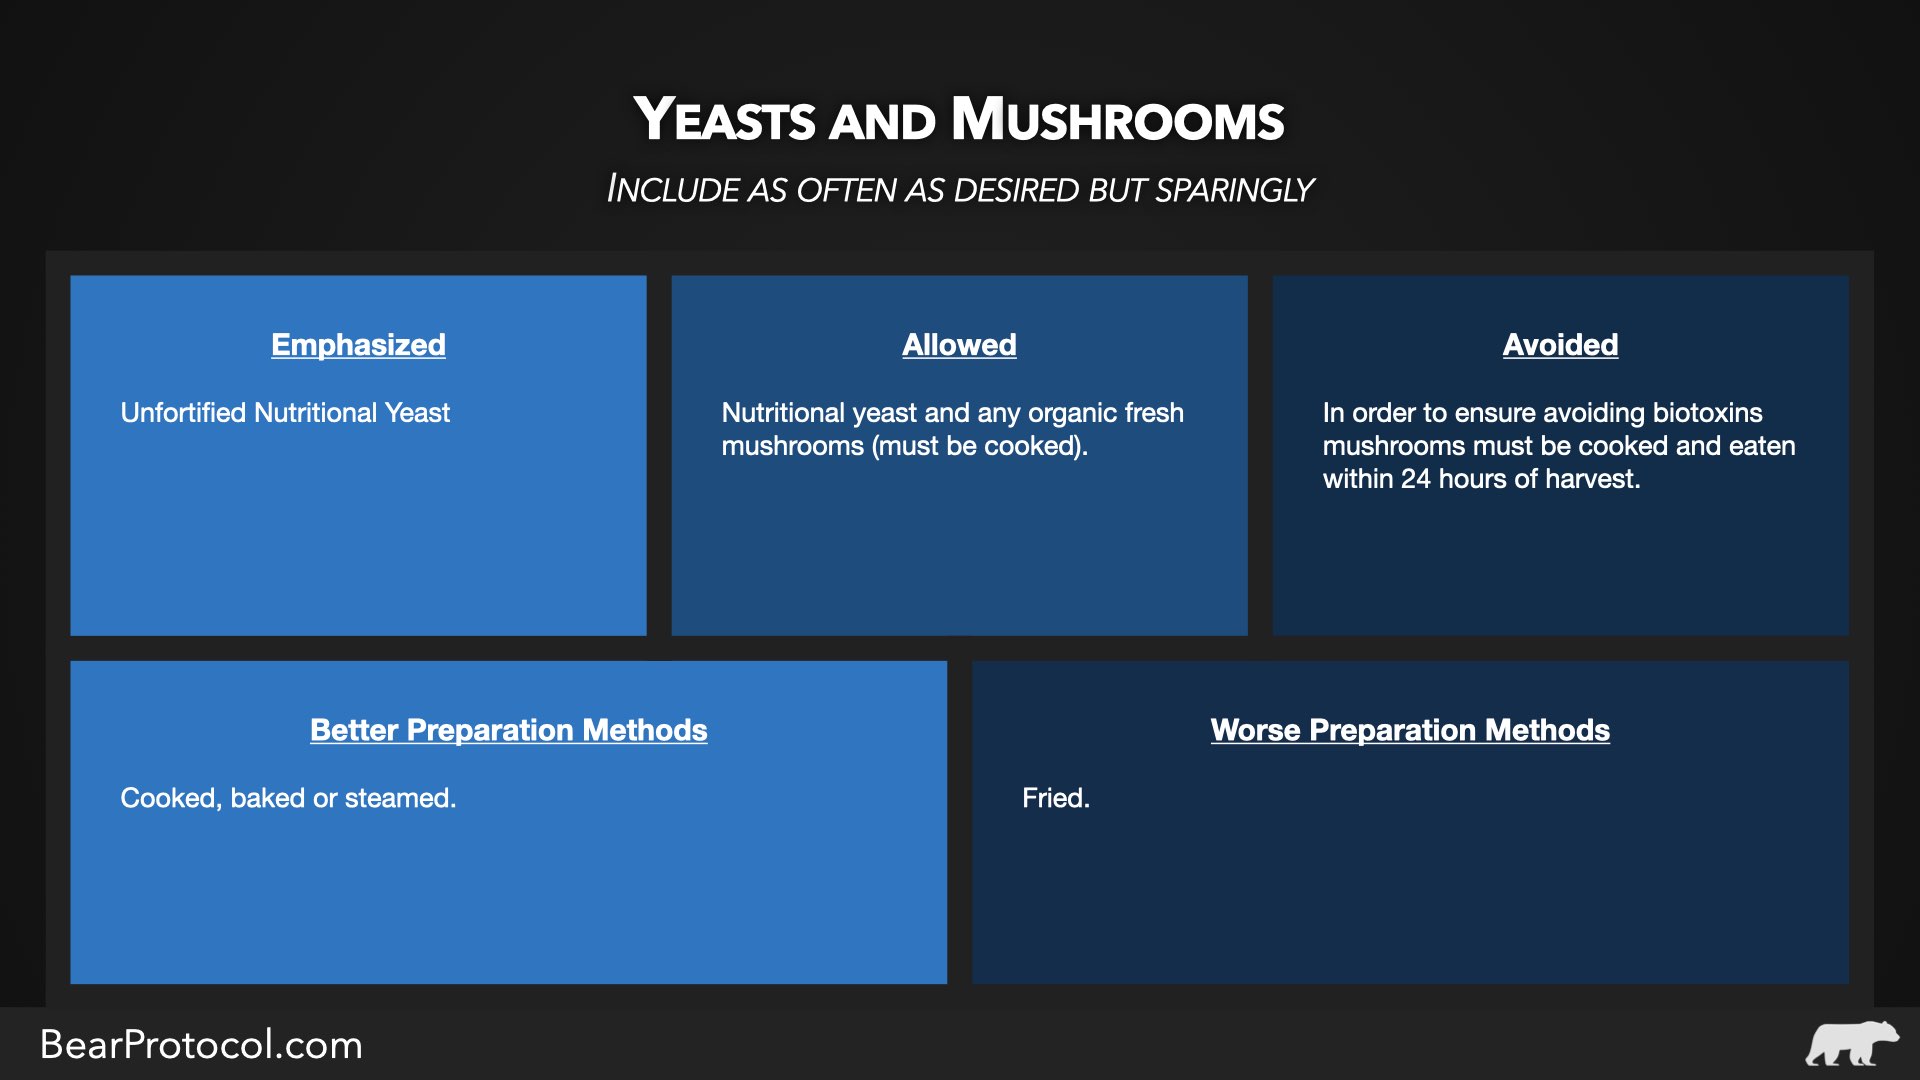 Yeast and mushrooms